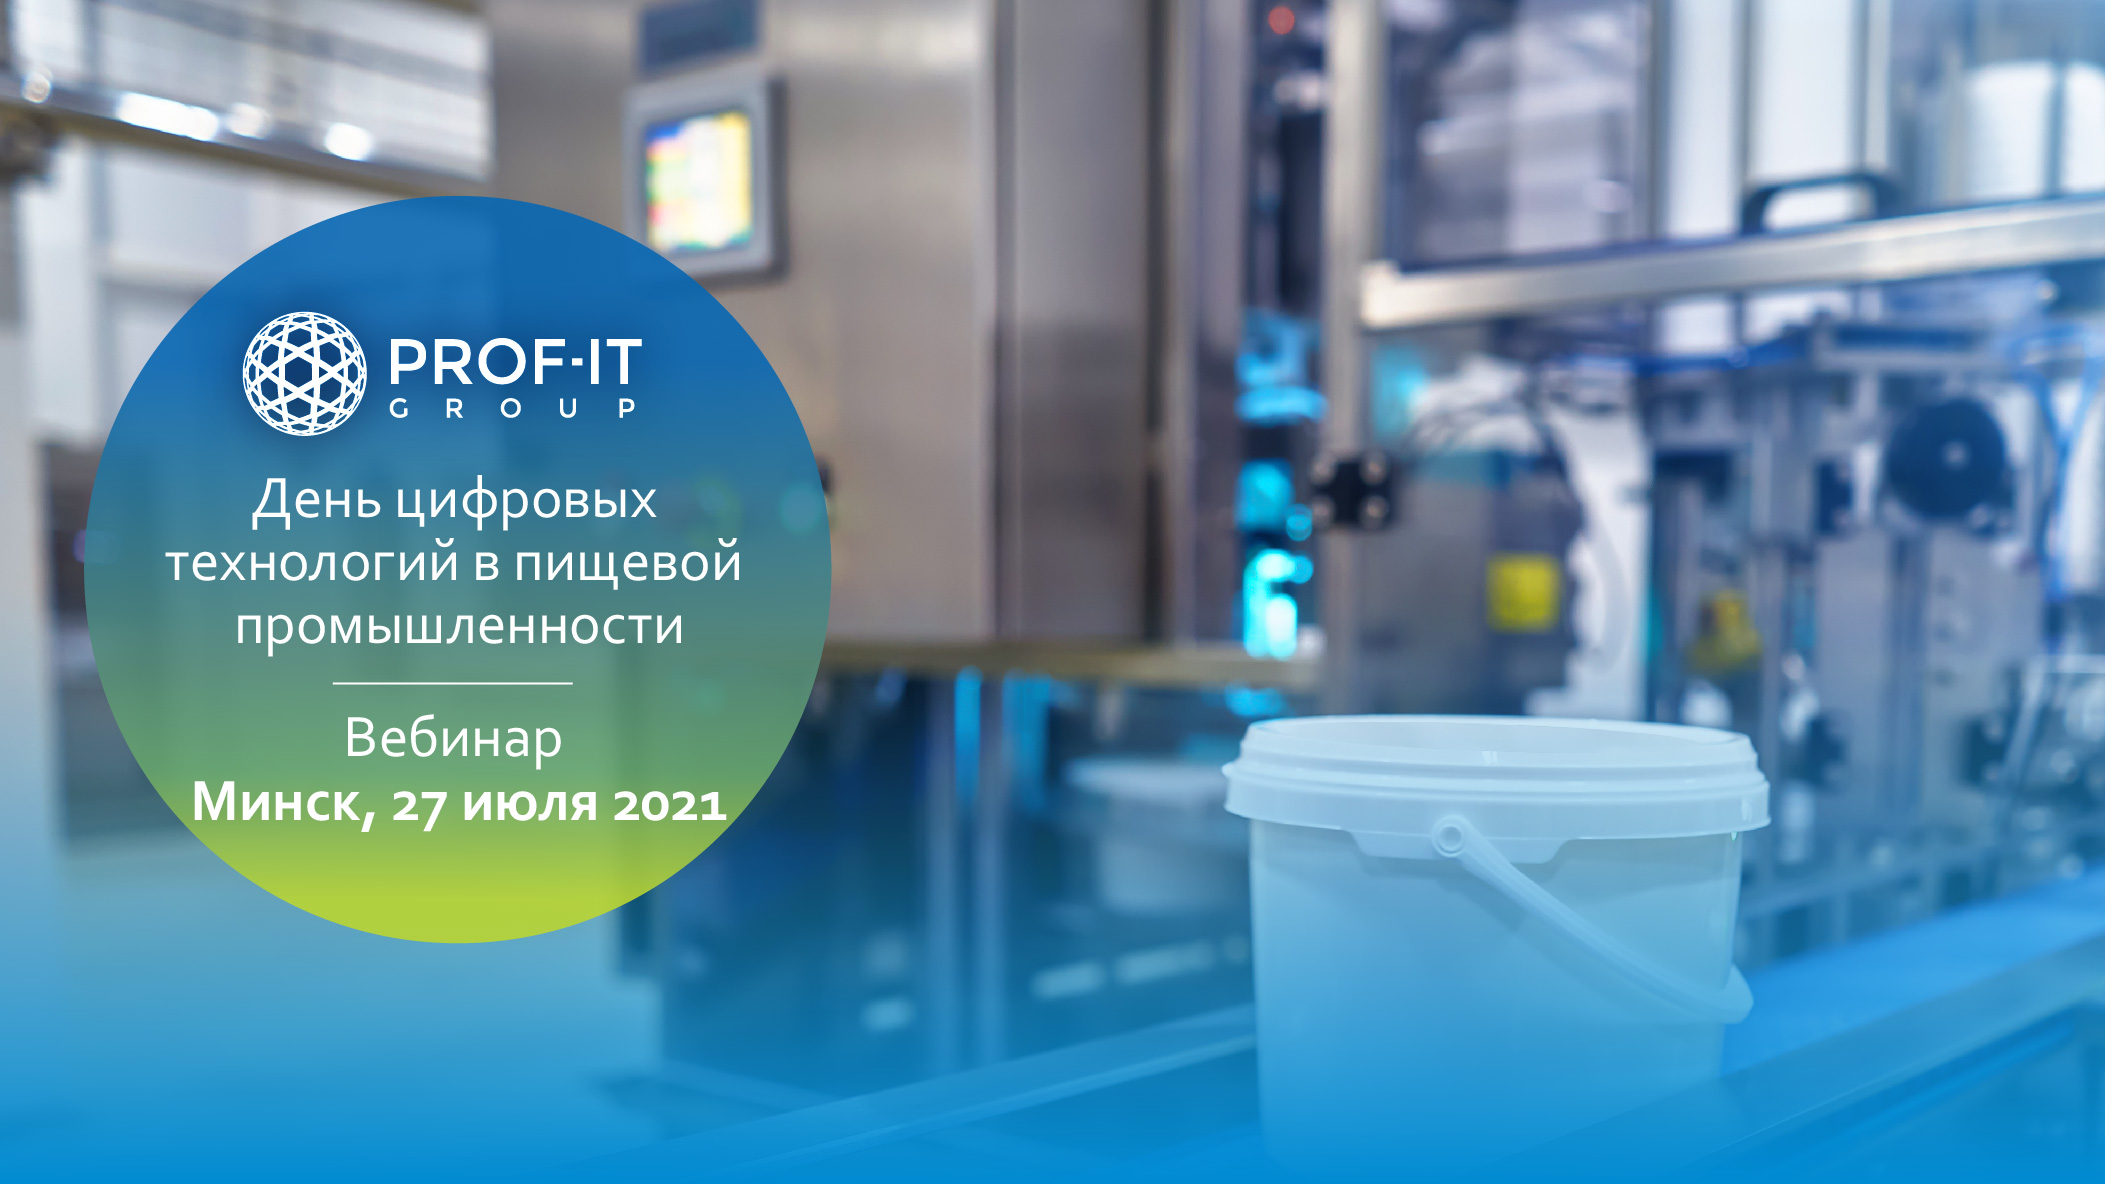 PROF-IT GROUP представит цифровые решения предприятиям пищевой промышленности Республики Беларусь